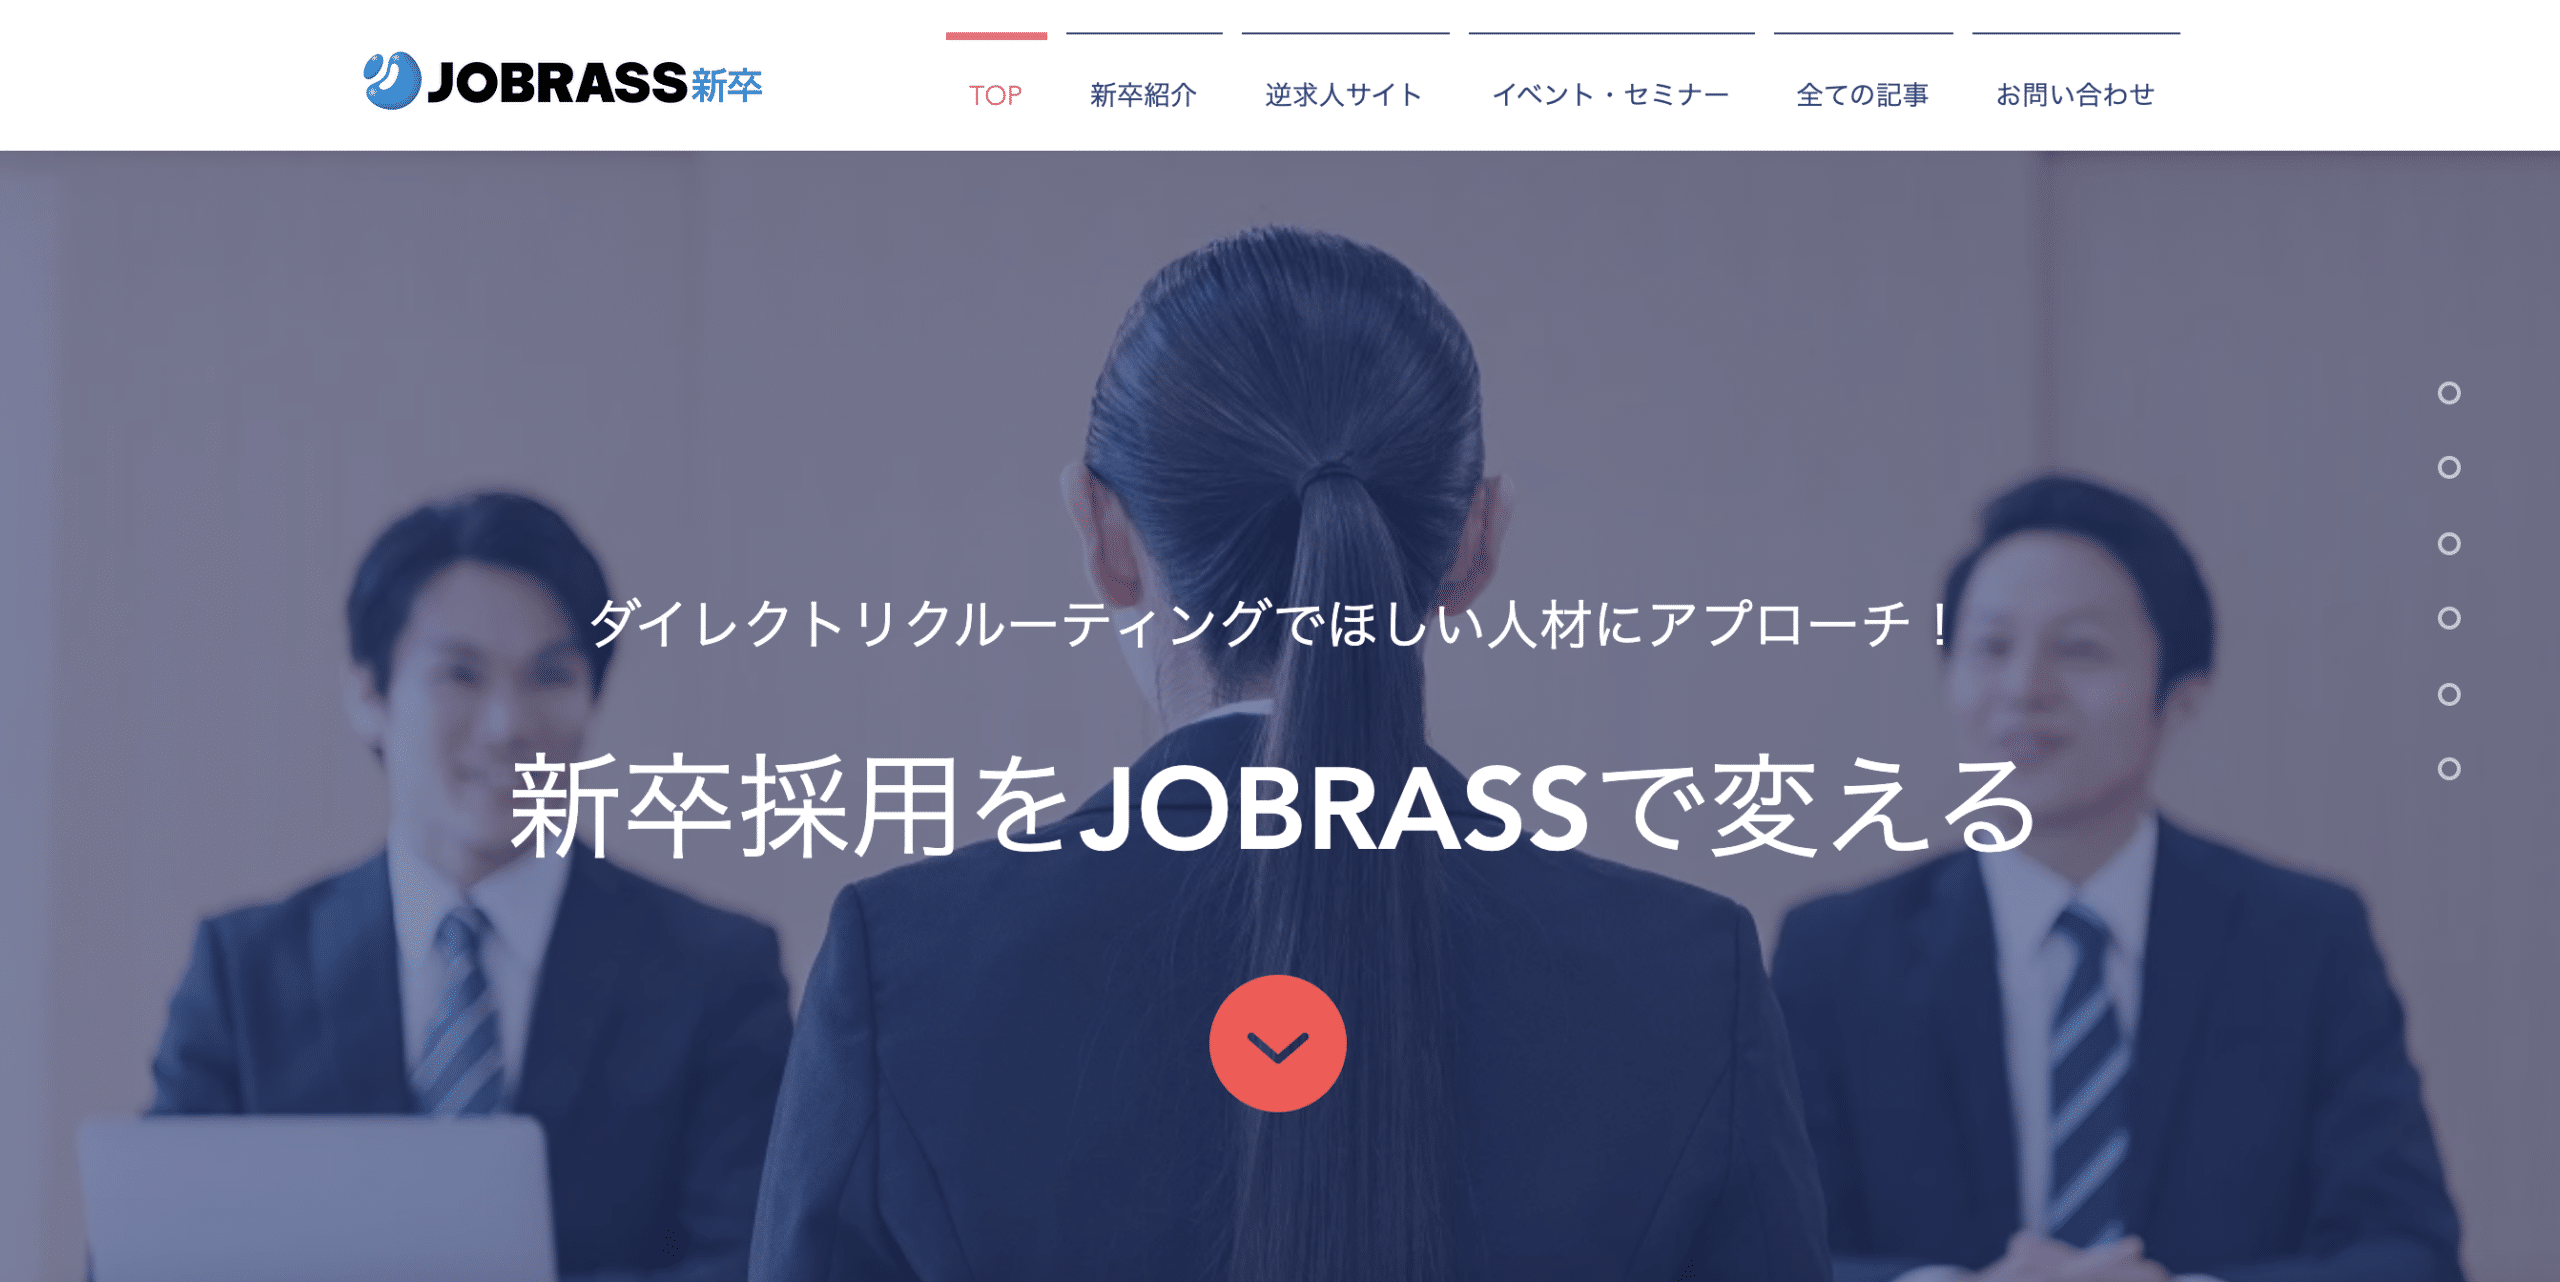 JOBRASS_shinsotsu